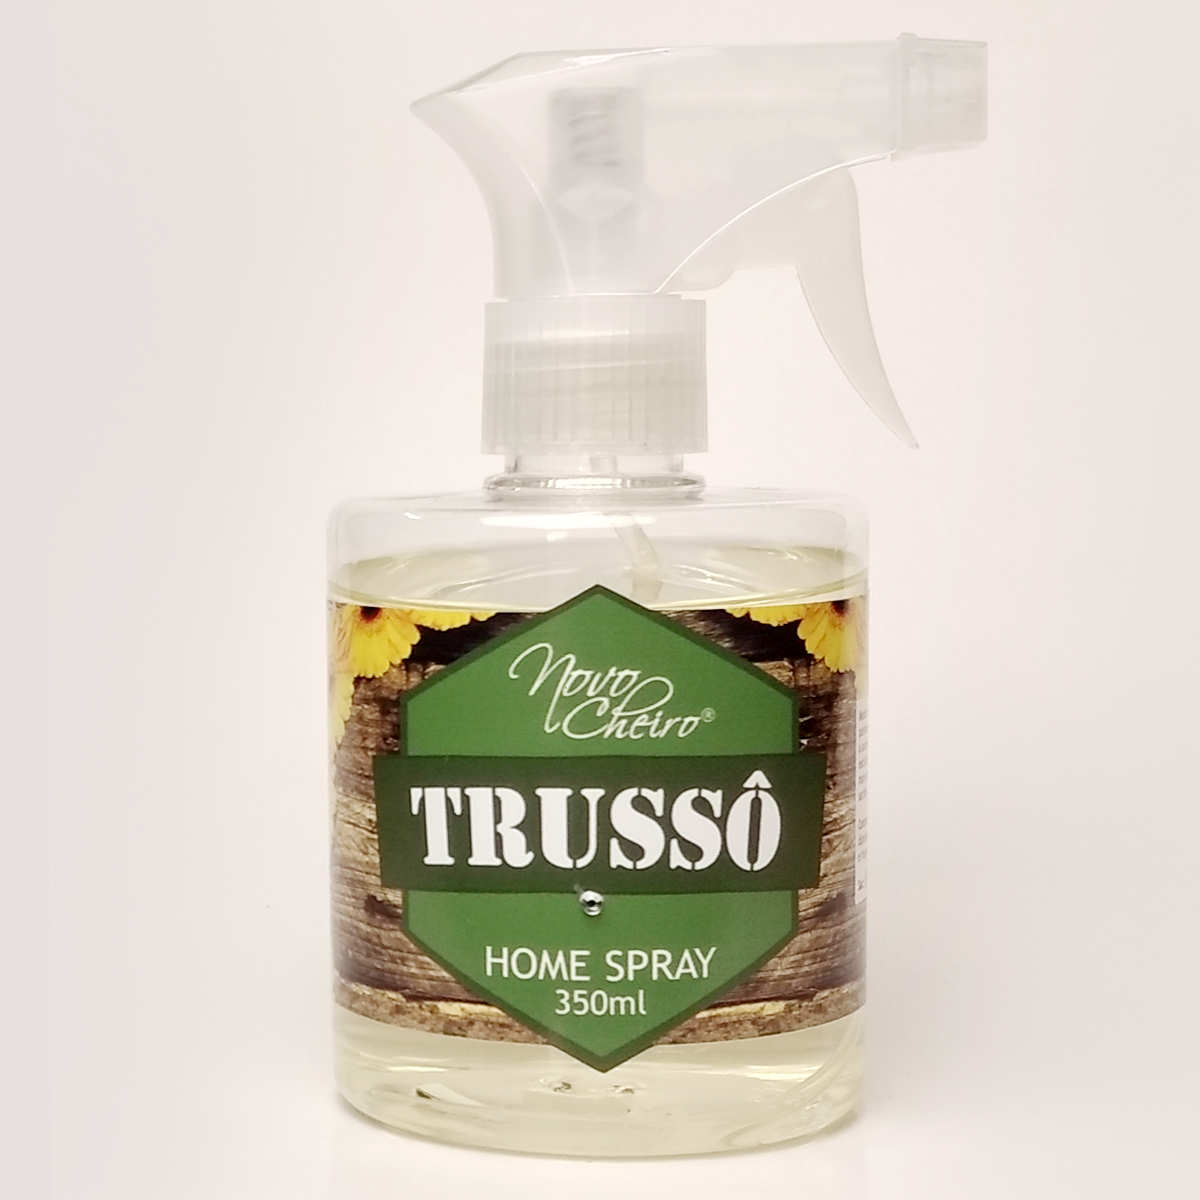 aromatizador-home-spray-350ml-trusso